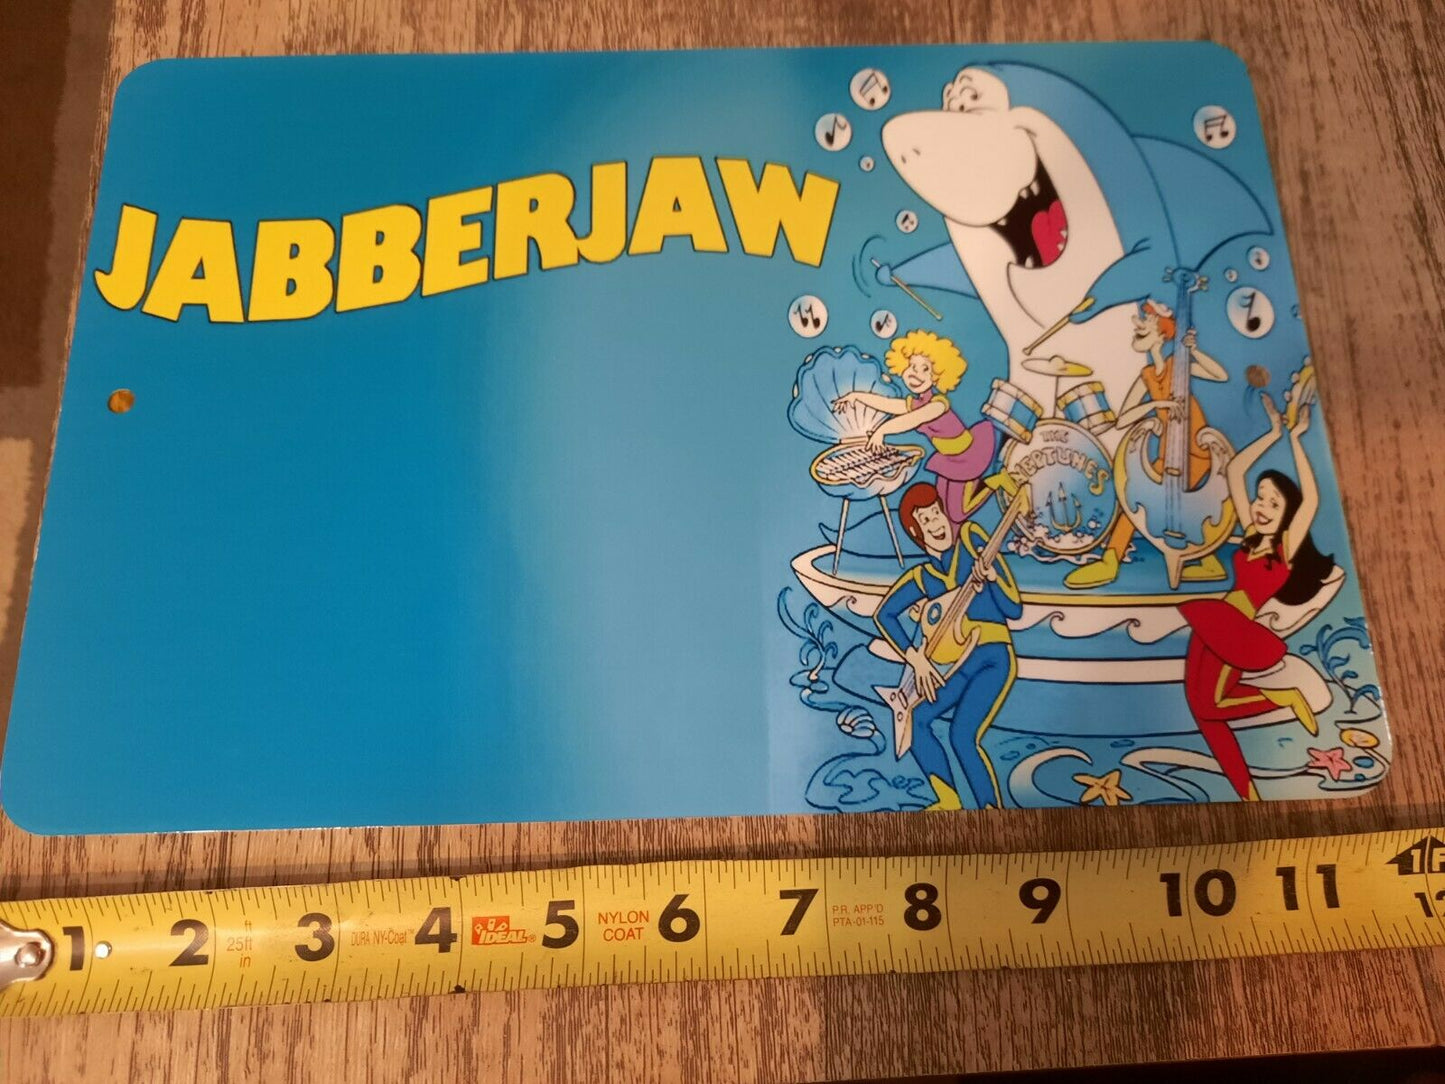 Jabberjaw Classic Cartoon 8x12 Metal Wall Sign Hanna Barbera